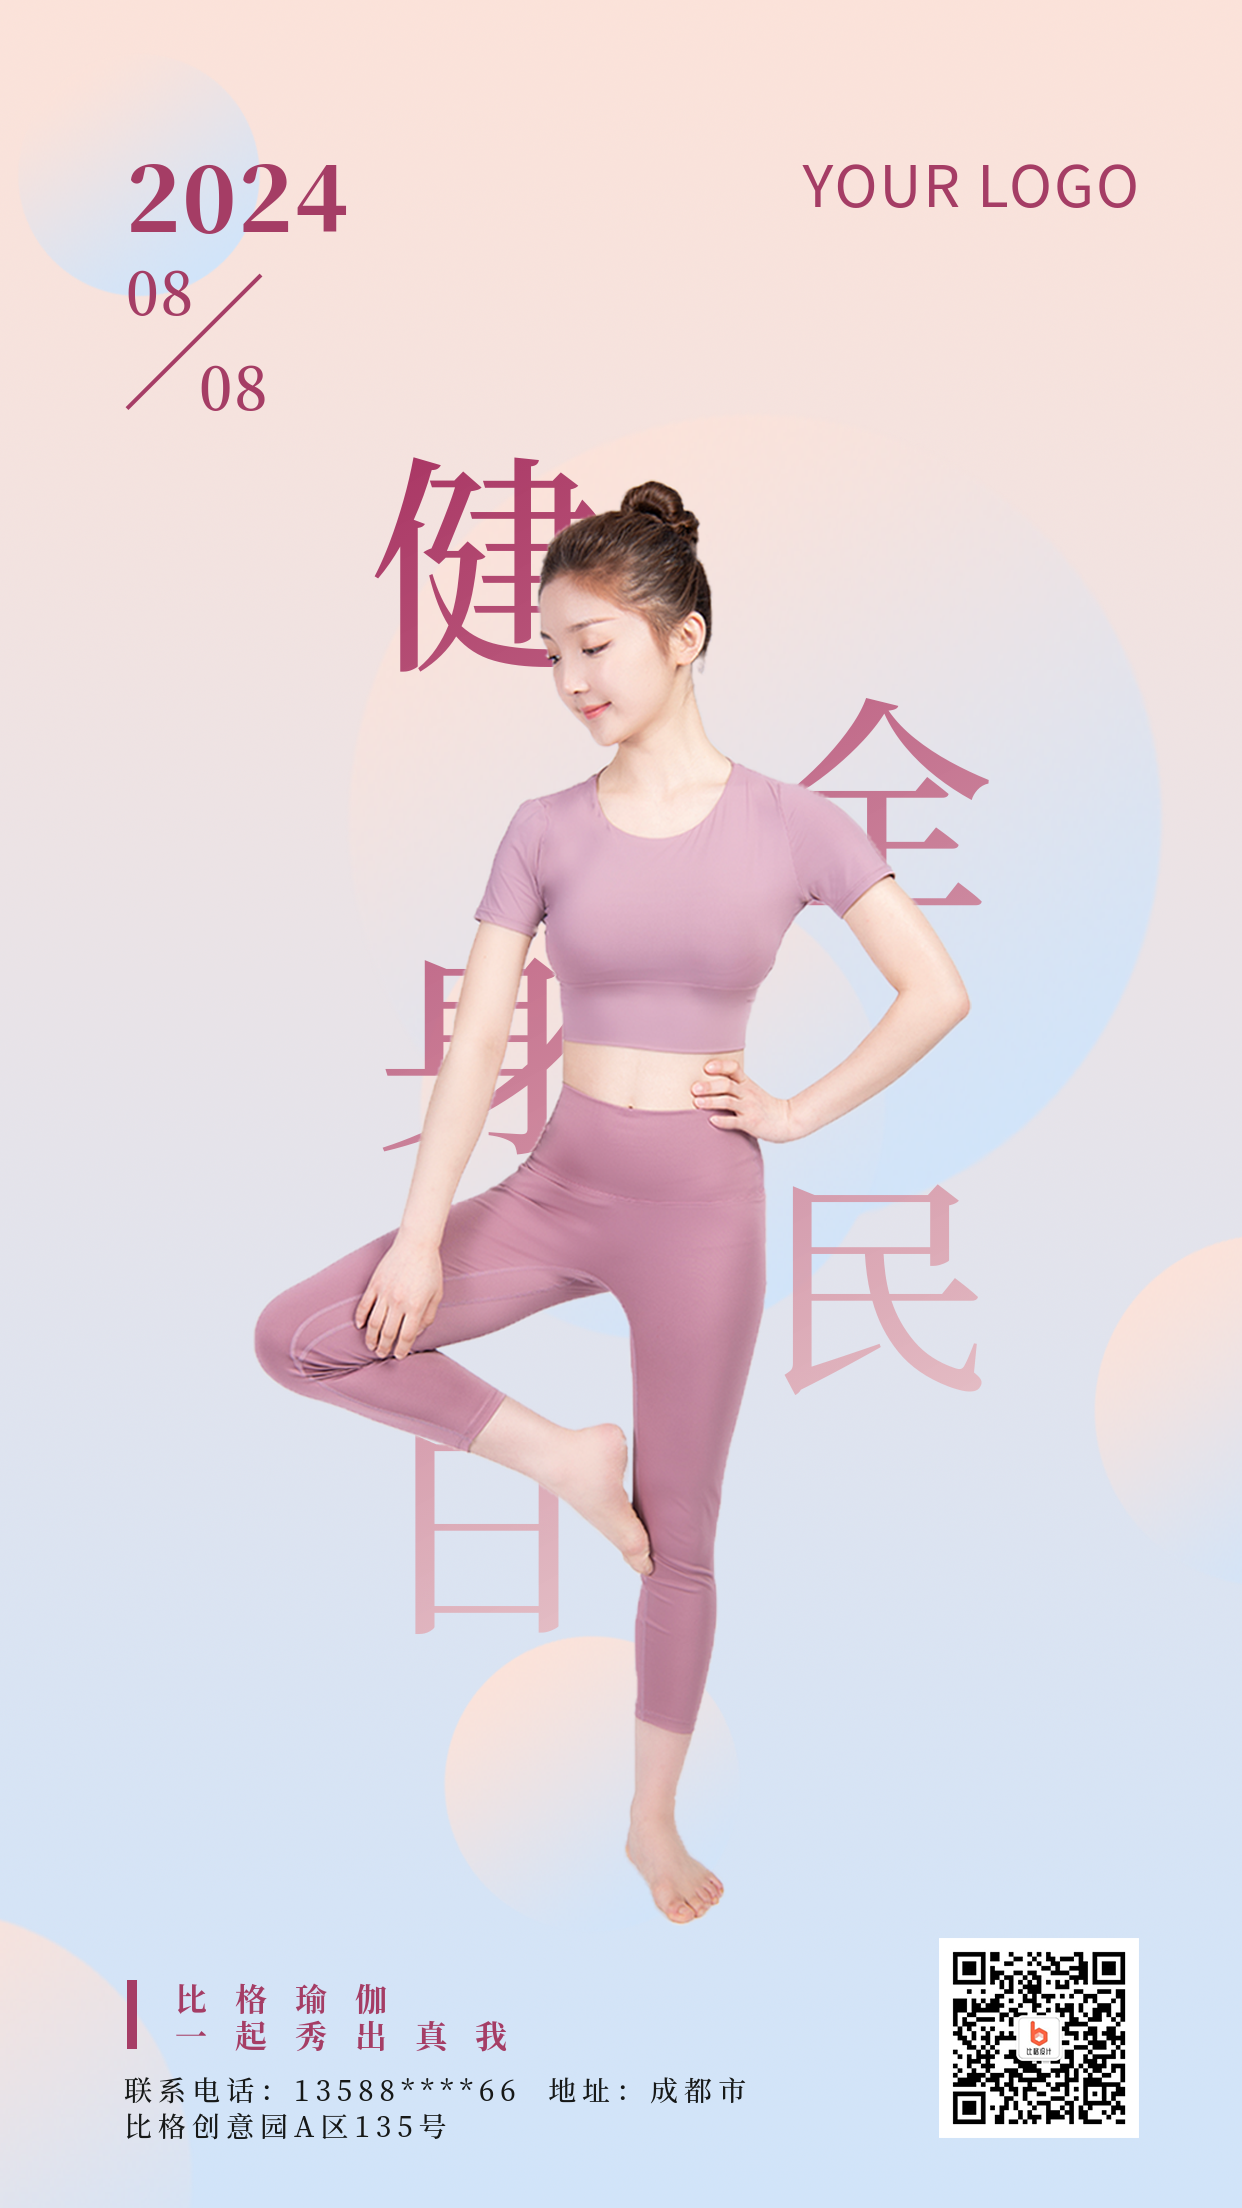 全民健身日瑜伽人物粉色渐变手机海报